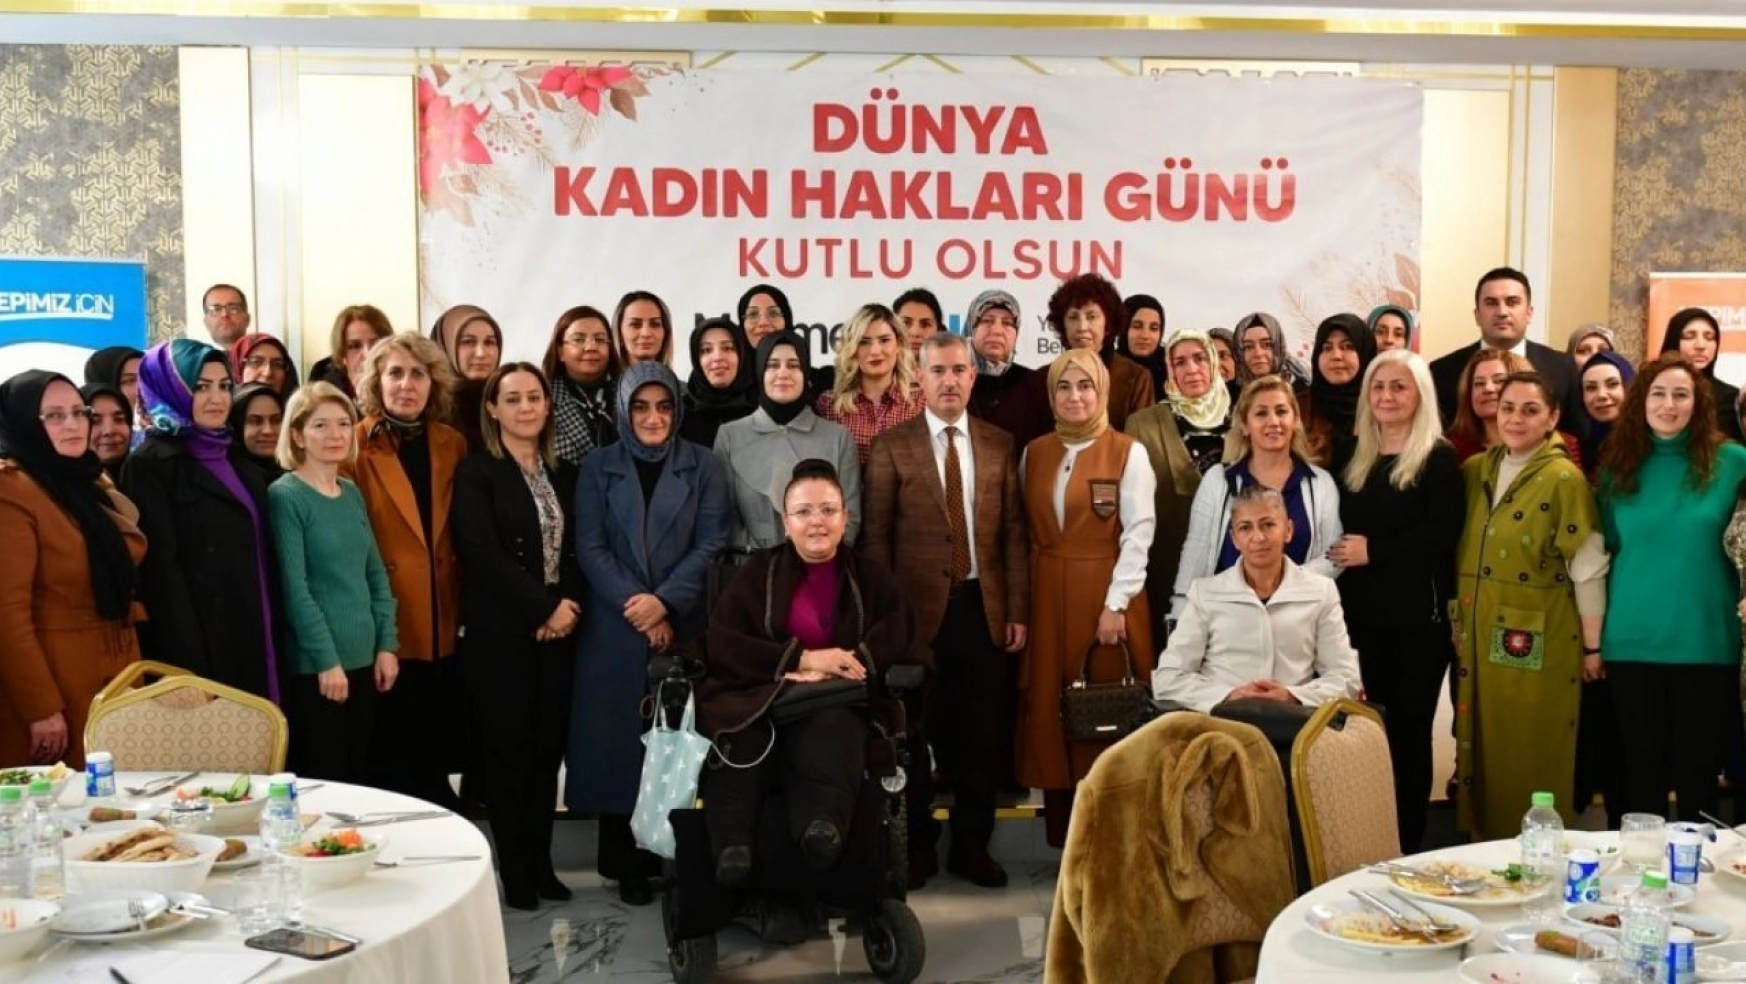 Başkan Çınar, Kadının olduğu yerde başarı, adalet ve merhamet vardır